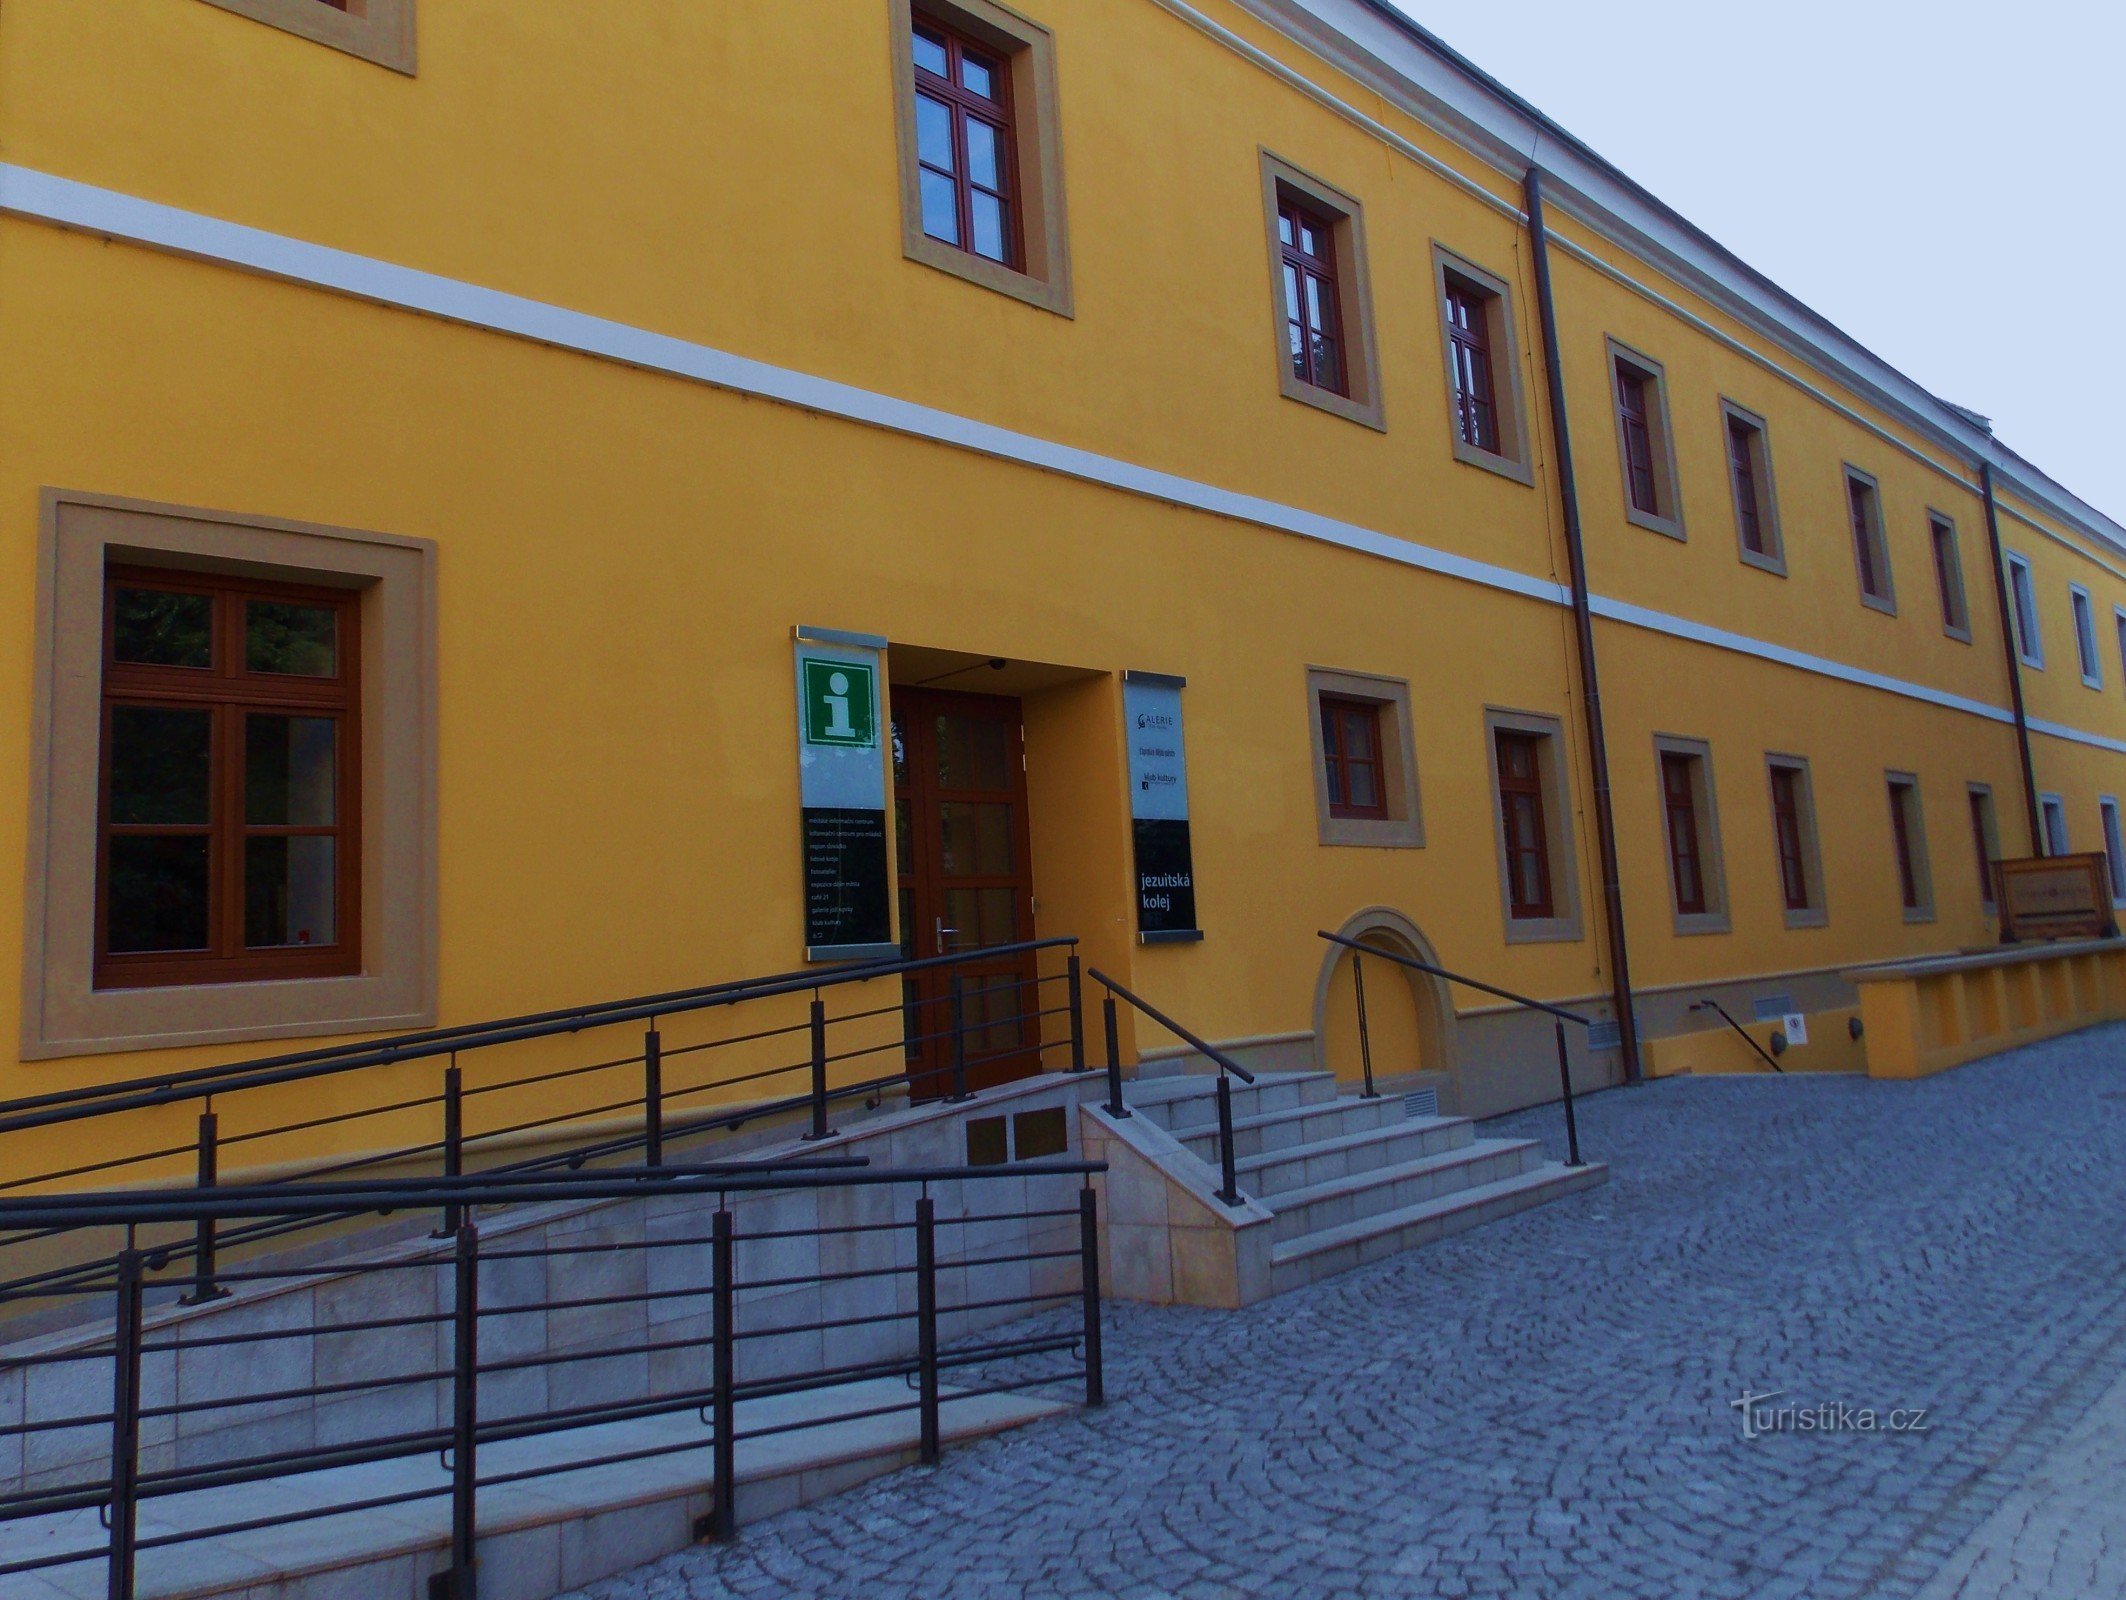 Slovakiskt centrum för kultur och traditioner i Uh. Hradišti